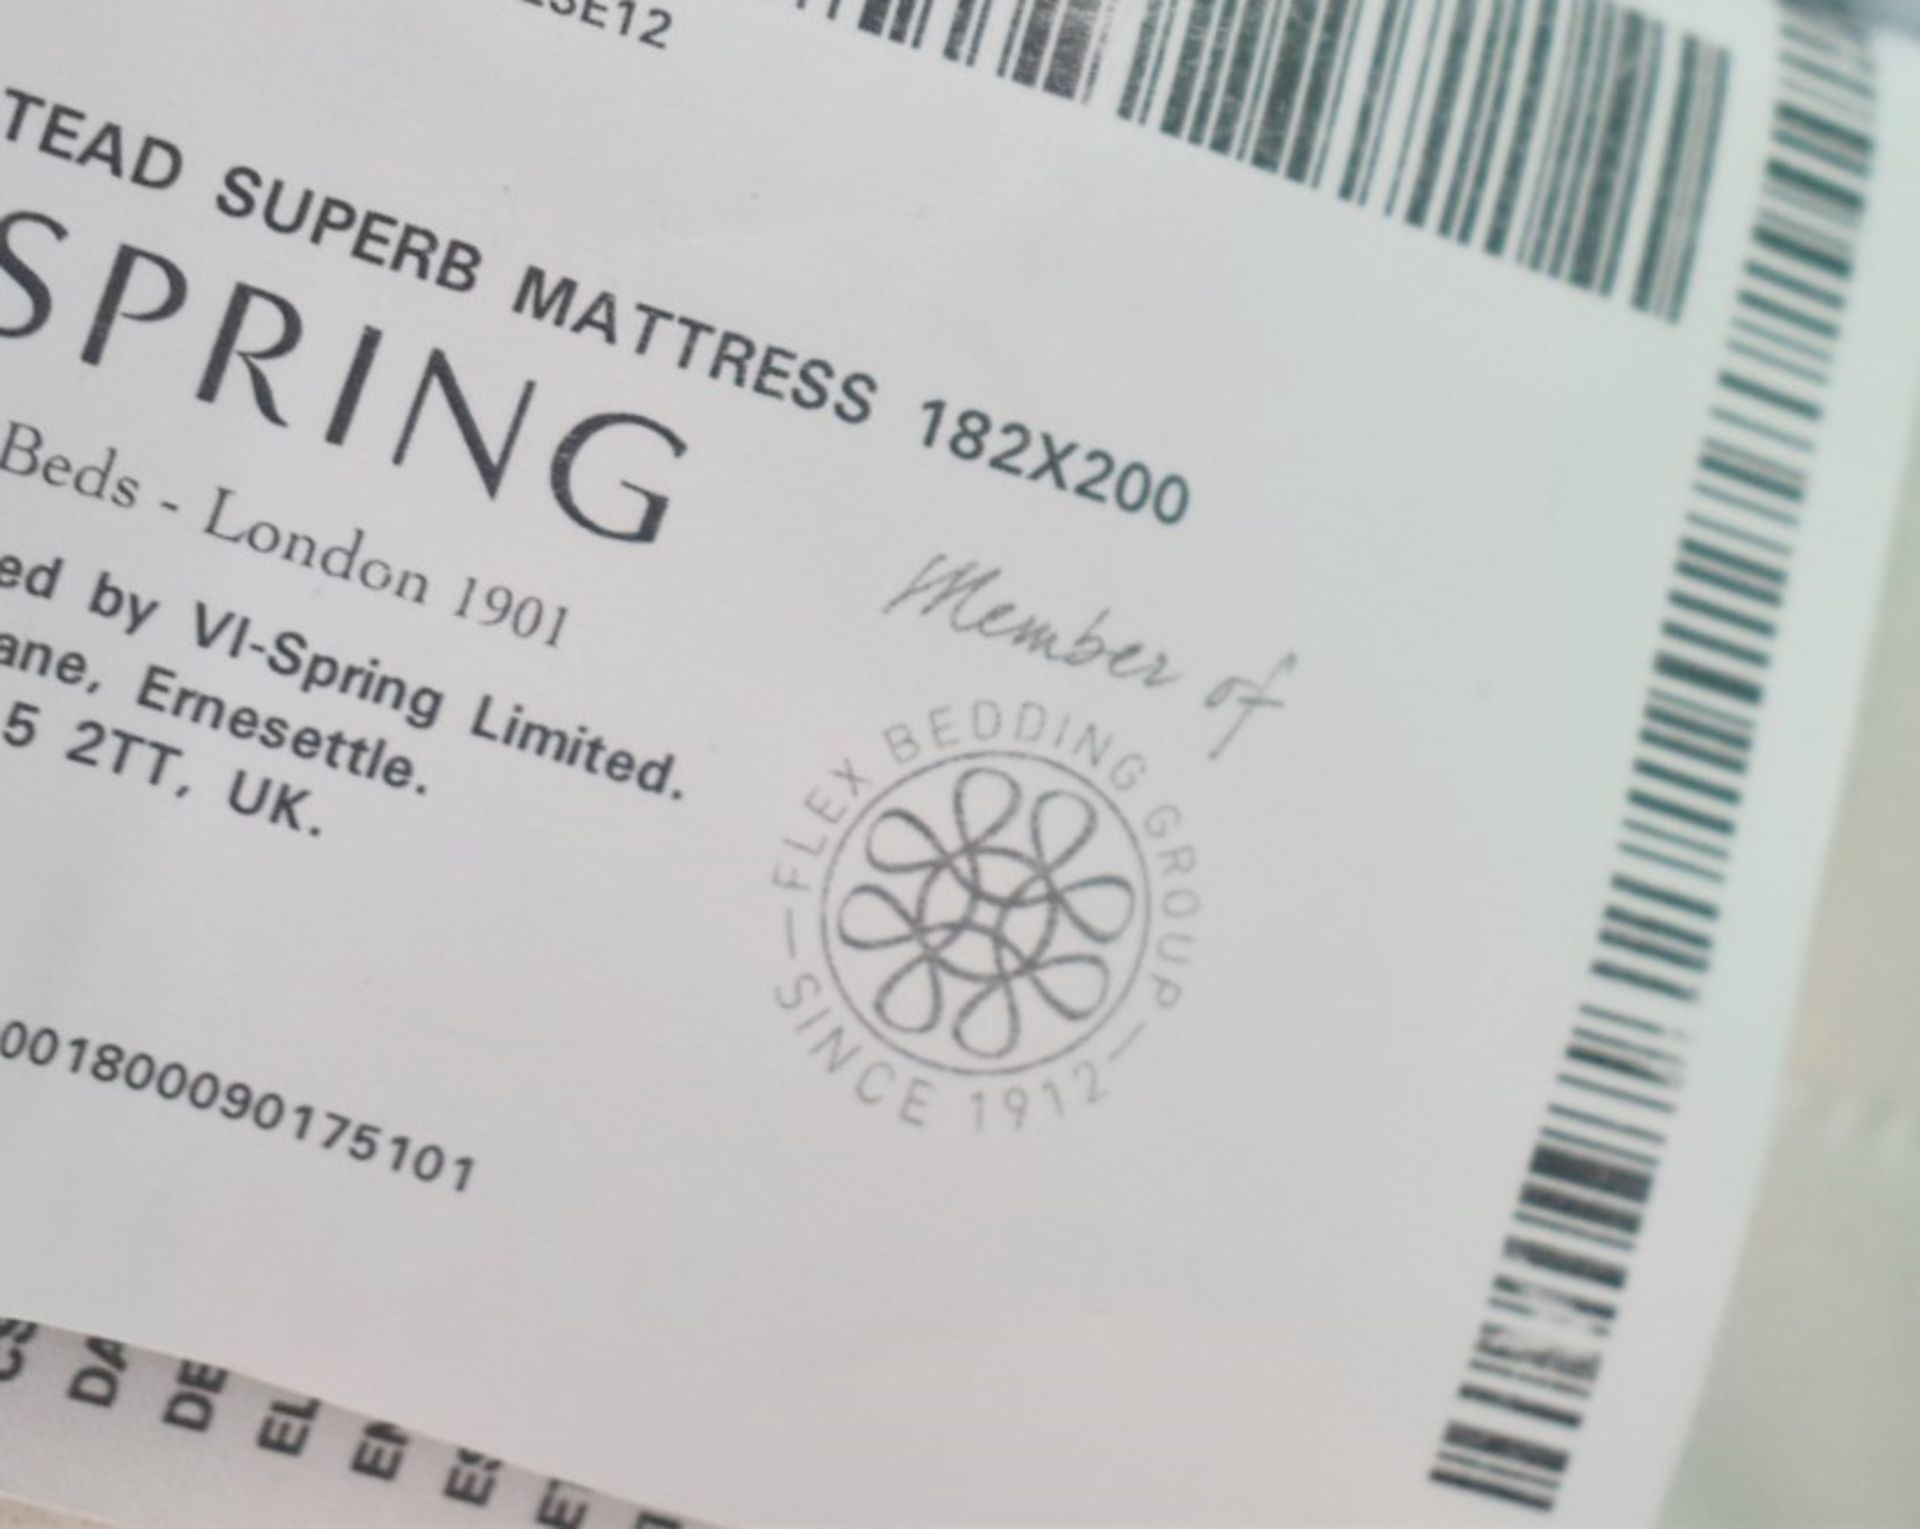 1 x VISPRING 'Bedstead Superb' Luxury Super Kingsize Mattress - Medium Springing - RRP £5,375 - Image 7 of 9